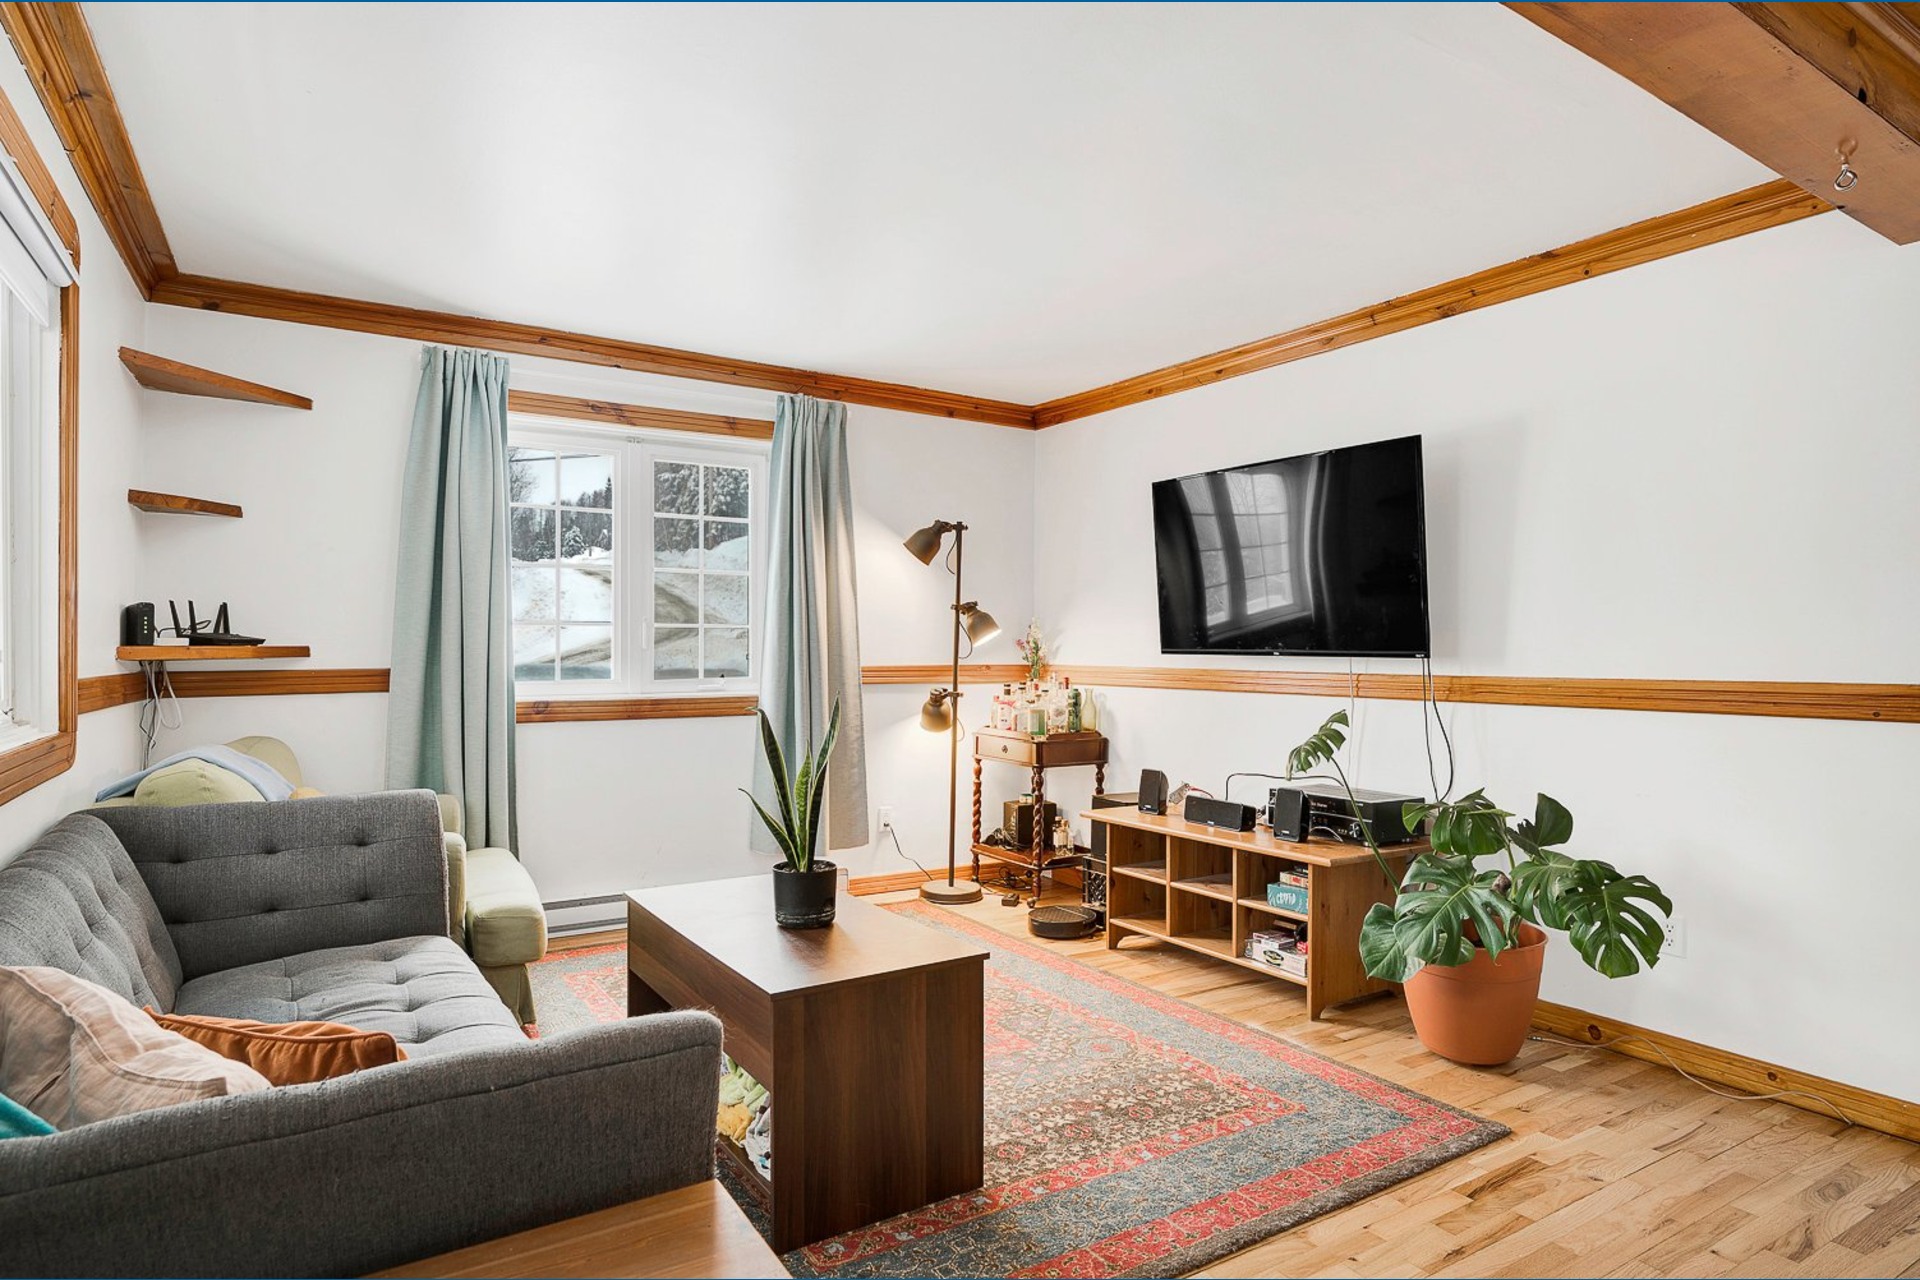 image 2 - Duplex En venta Val-des-Lacs - 11 habitaciones